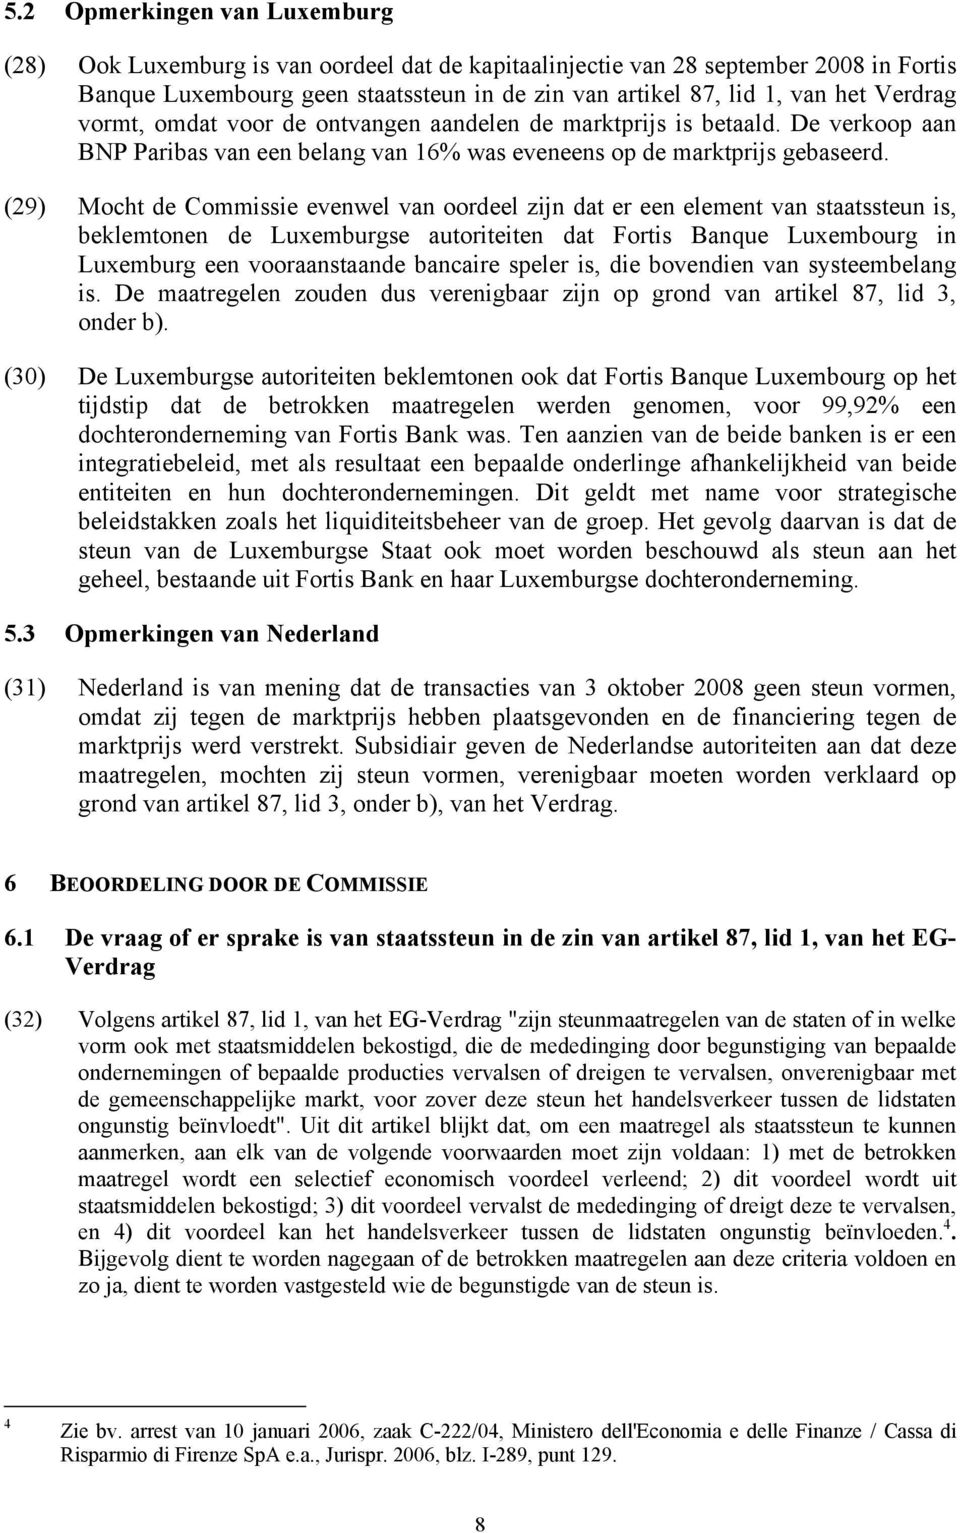 (29) Mocht de Commissie evenwel van oordeel zijn dat er een element van staatssteun is, beklemtonen de Luxemburgse autoriteiten dat Fortis Banque Luxembourg in Luxemburg een vooraanstaande bancaire